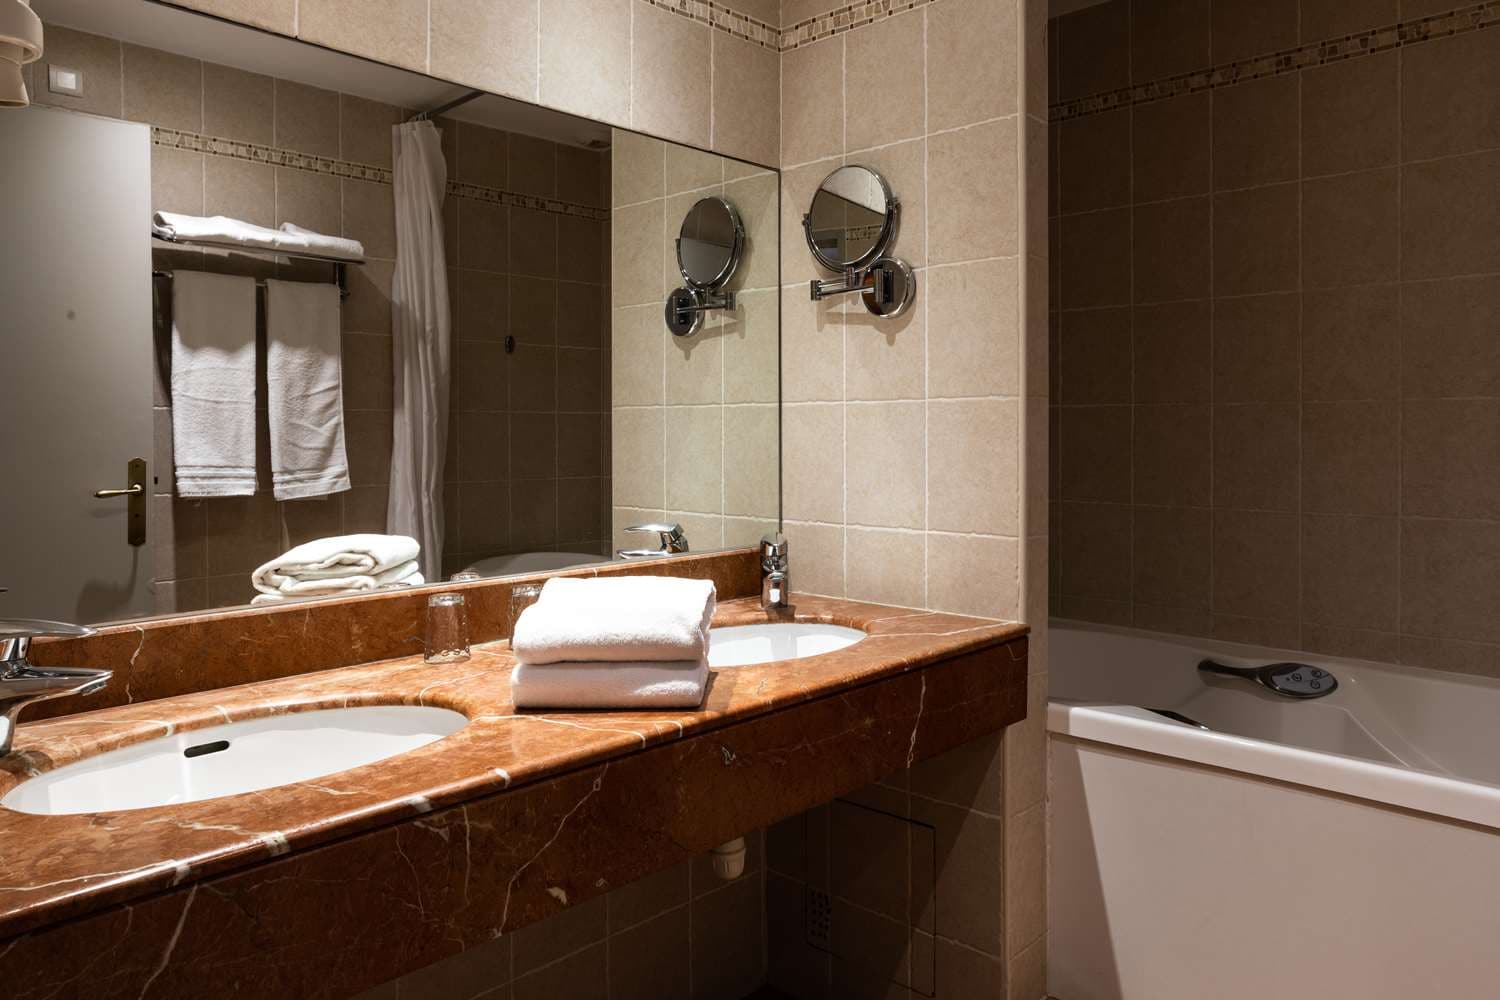 joints de la vitre de douche ayant besoin d'un bon nettoyage : image de  ibis Styles Zeebrugge - Tripadvisor